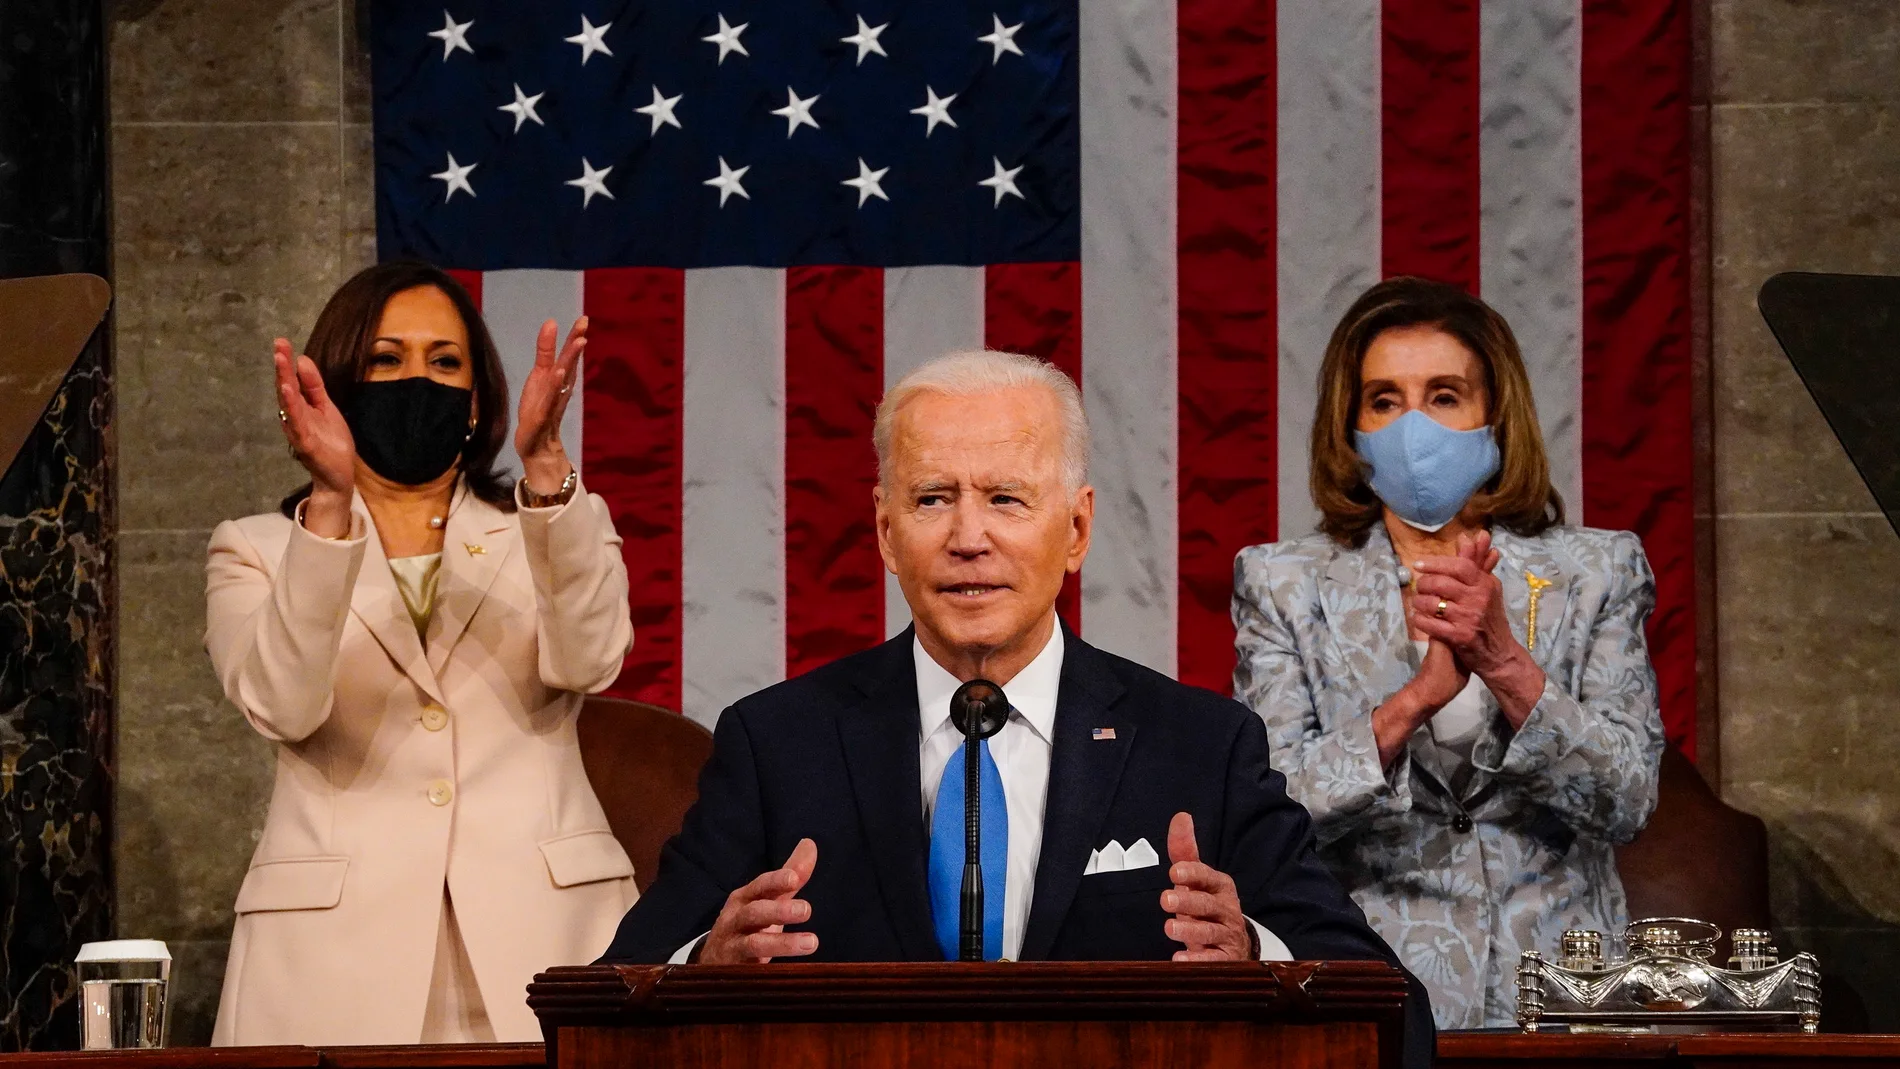 El presidente Joe Biden flanqueado por la vicepresidenta Kamala Harris y la presidenta de la Cámara de Representantes, Nancy Pelosi